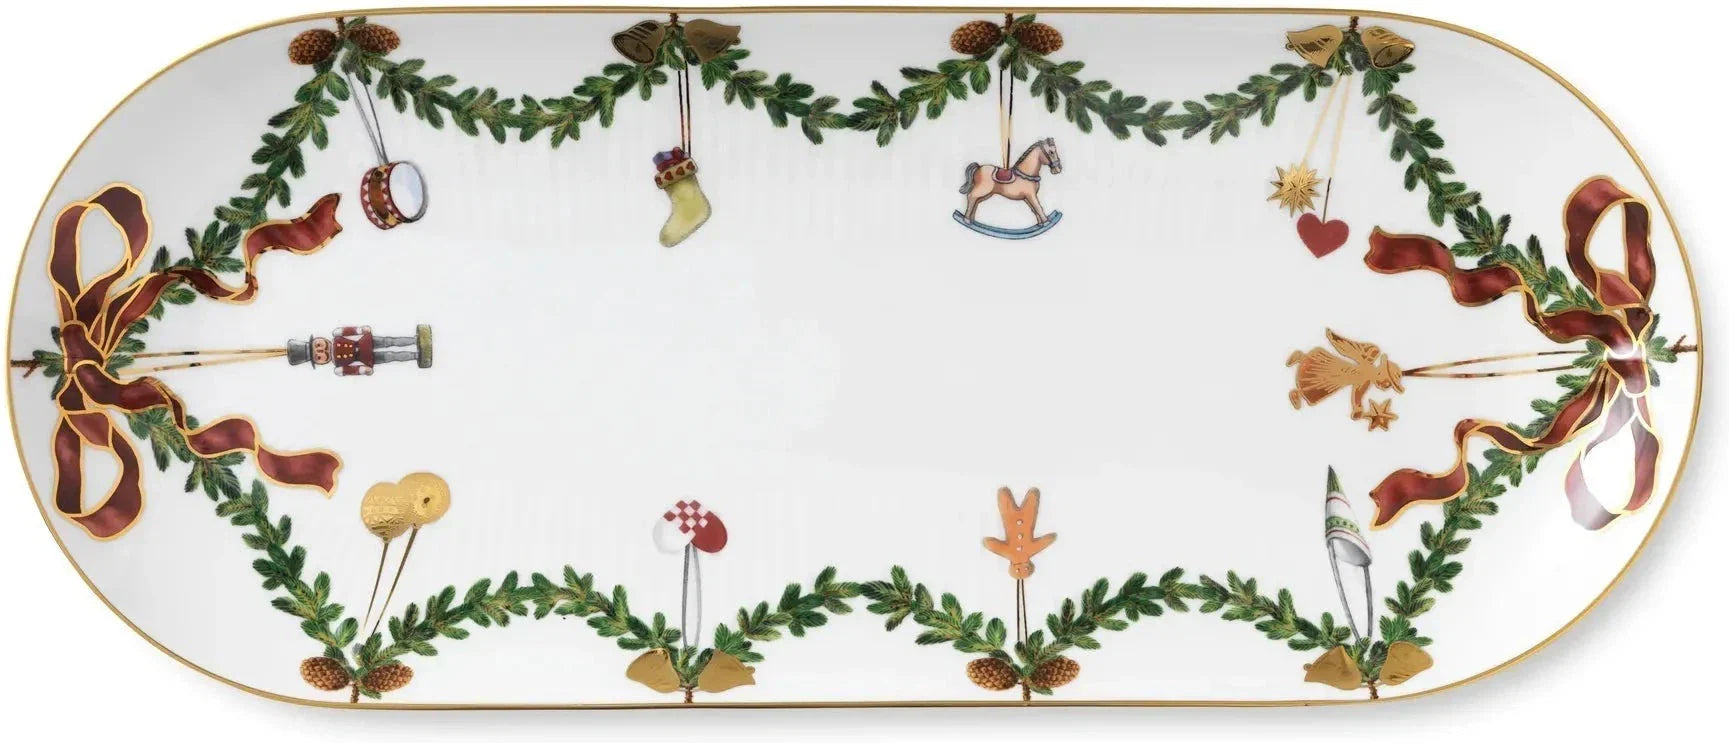 皇家哥本哈根星凹槽圣诞节菜39厘米